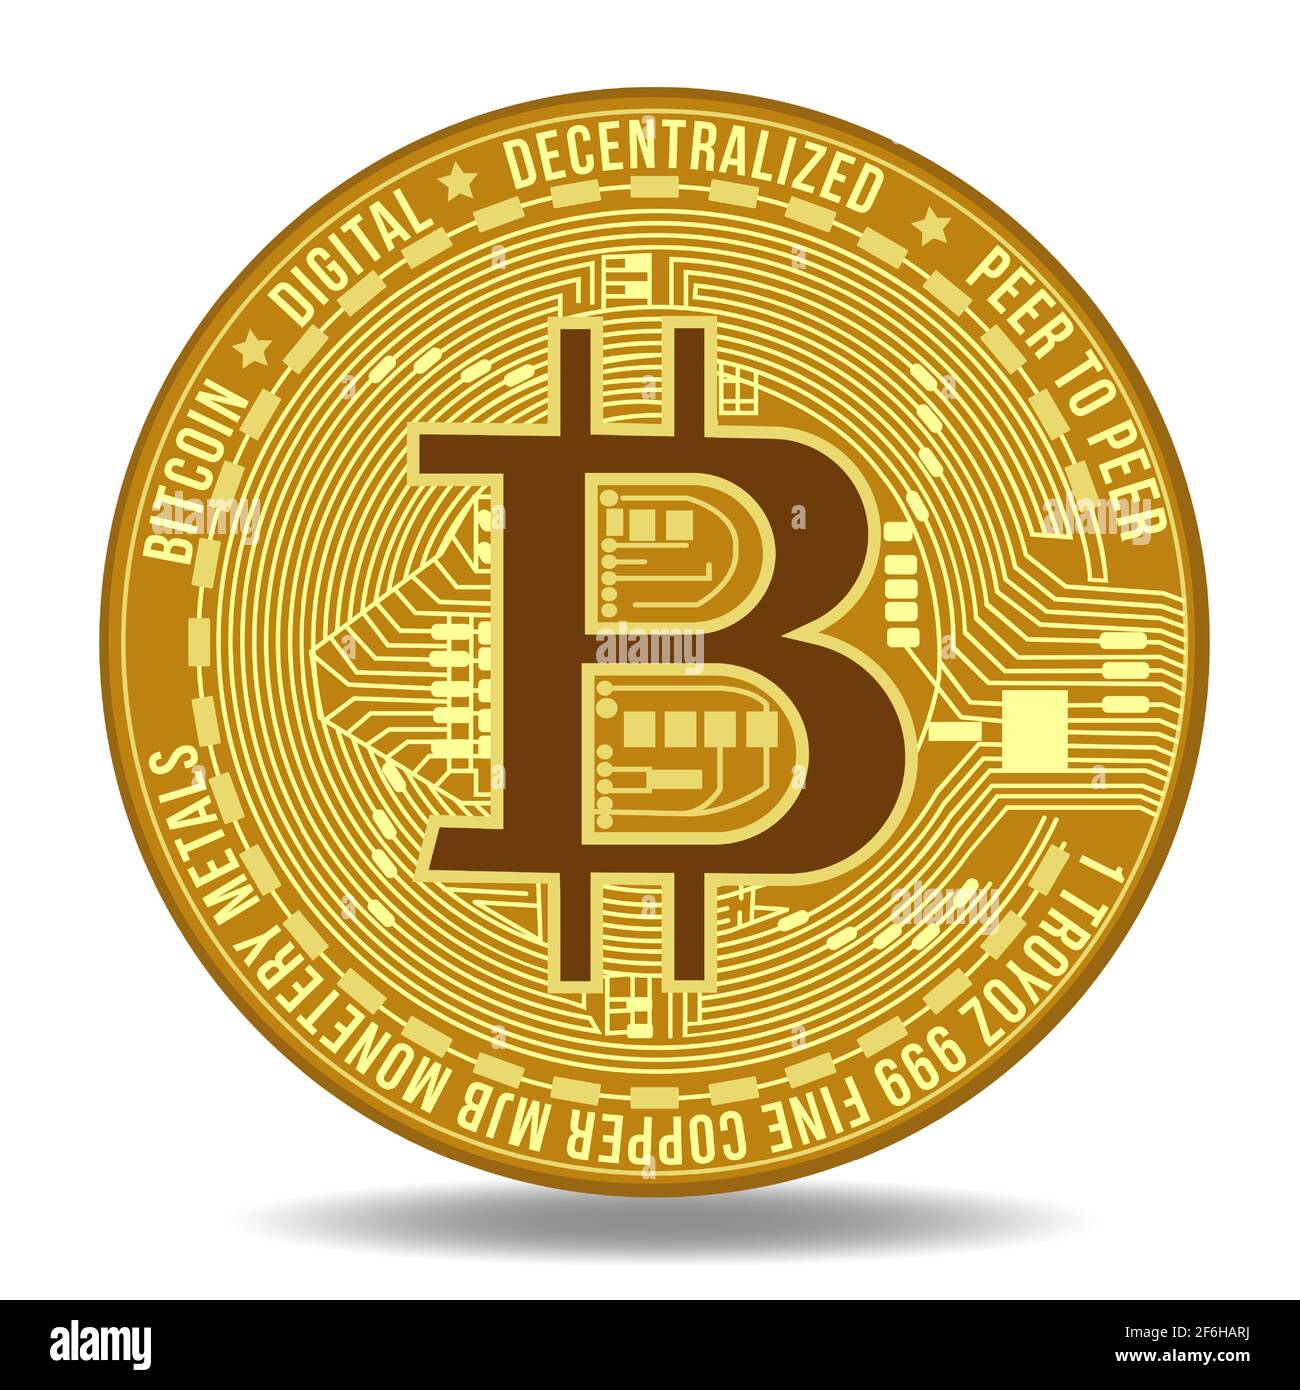 Illustrazione vettoriale del simbolo della criptovaluta Bitcoin e della tecnologia blockchain. Registro valuta virtuale Bitcoin Illustrazione Vettoriale